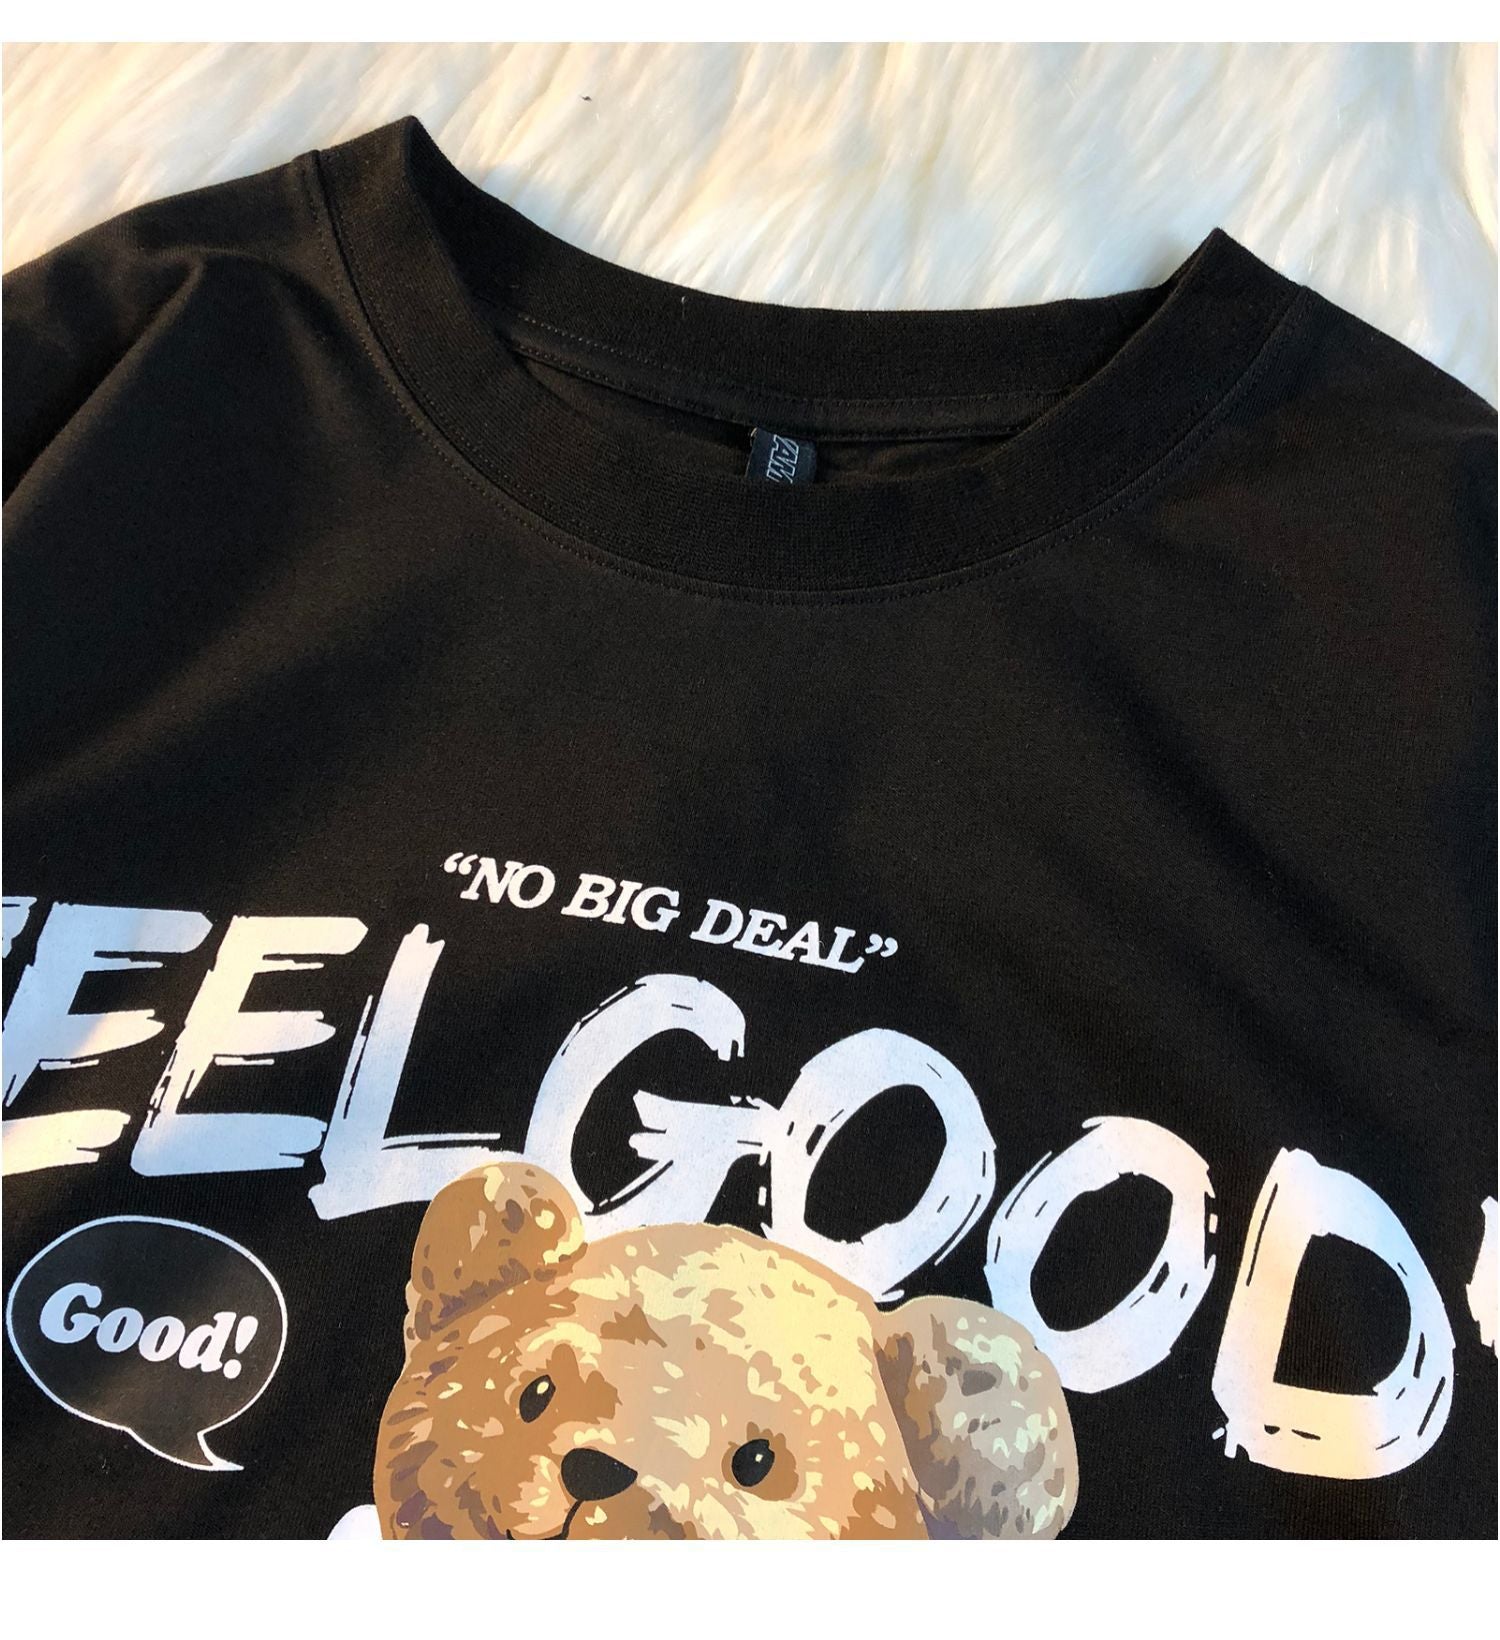 Charlie Bear "Feel Good"